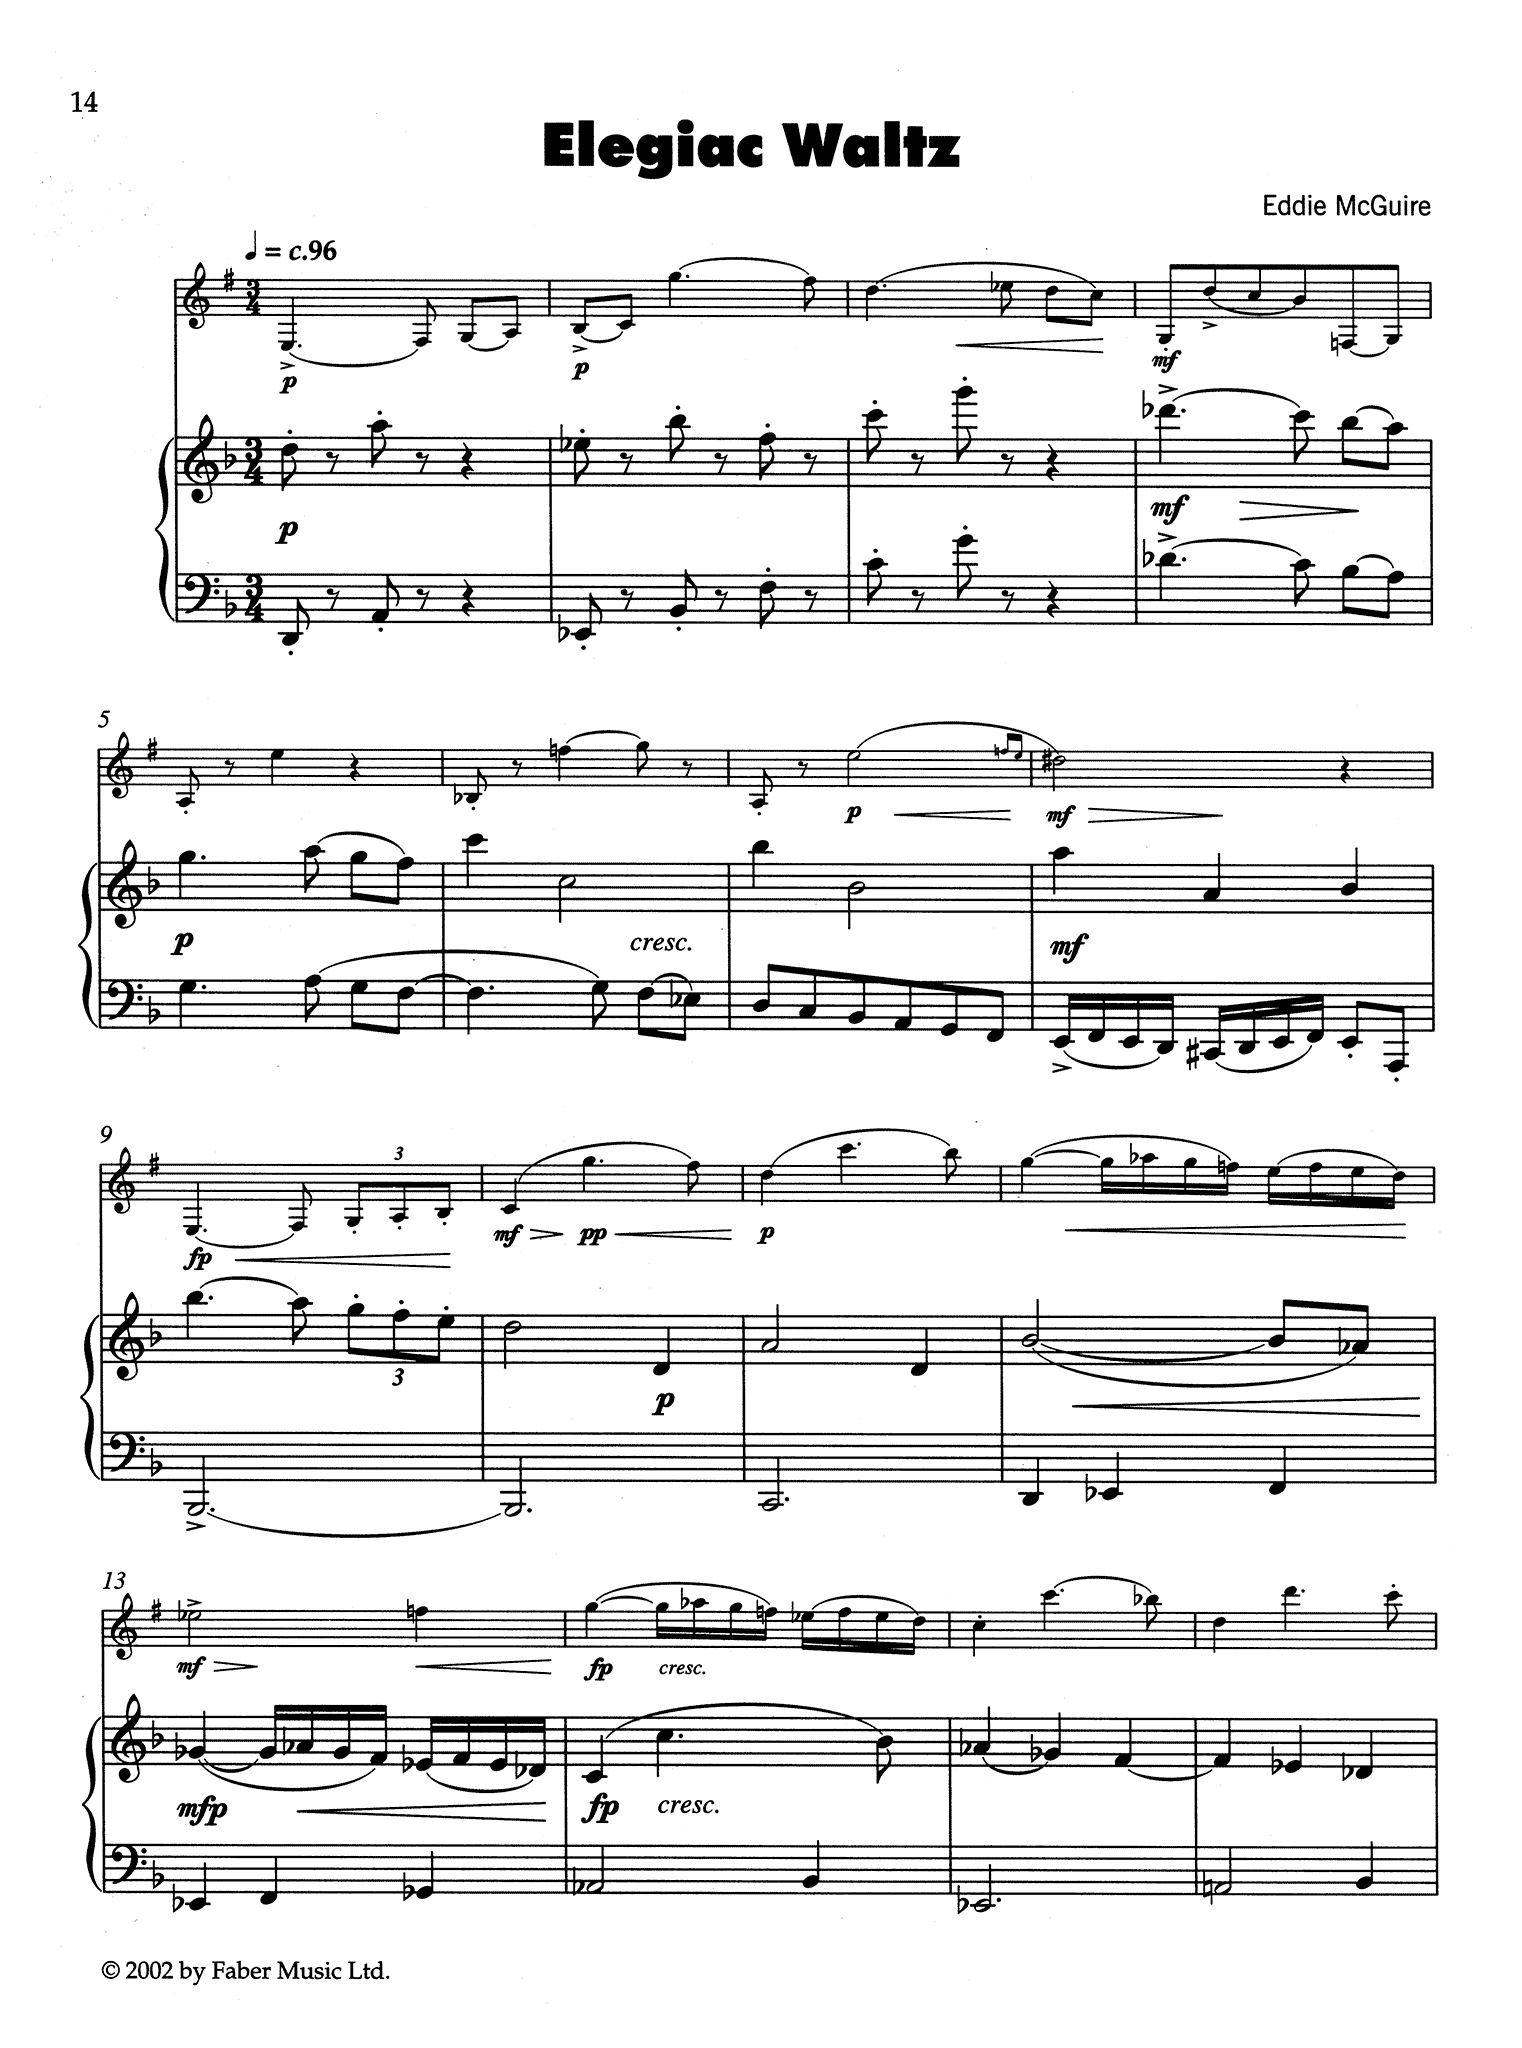 McGuire Elegiac Waltz Score